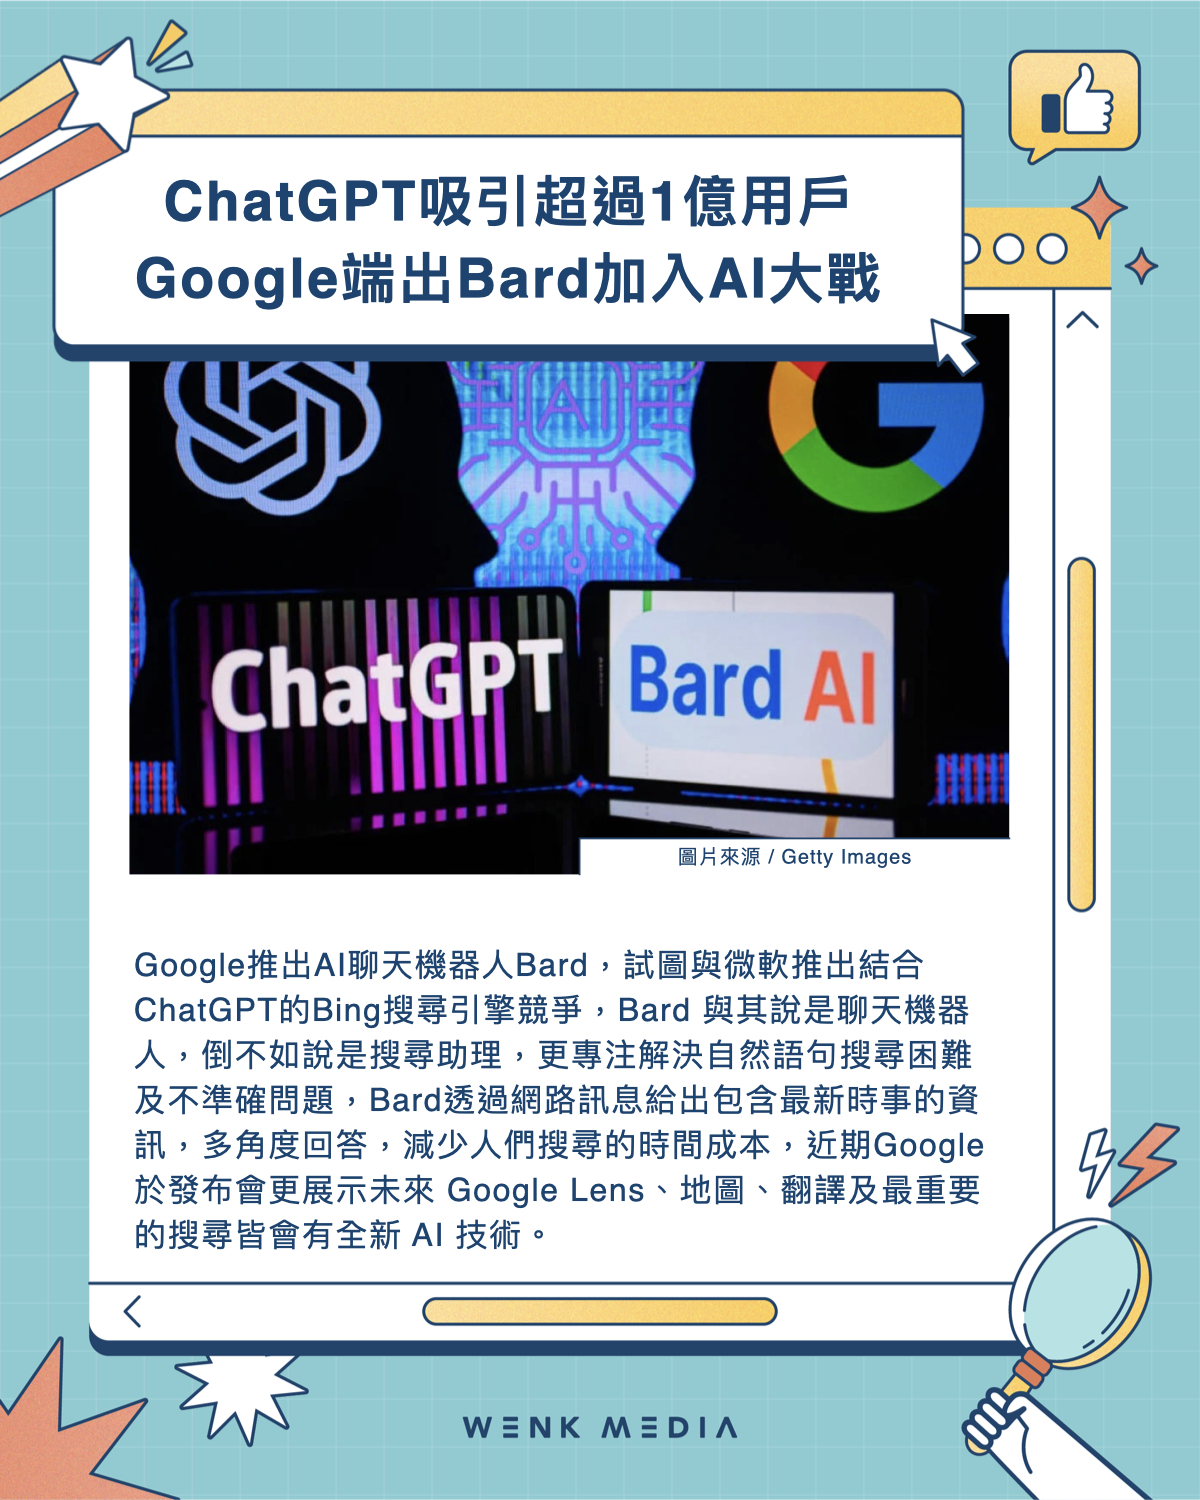 ChatGPT吸引超過1億用戶 Google端出Bard加入AI大戰